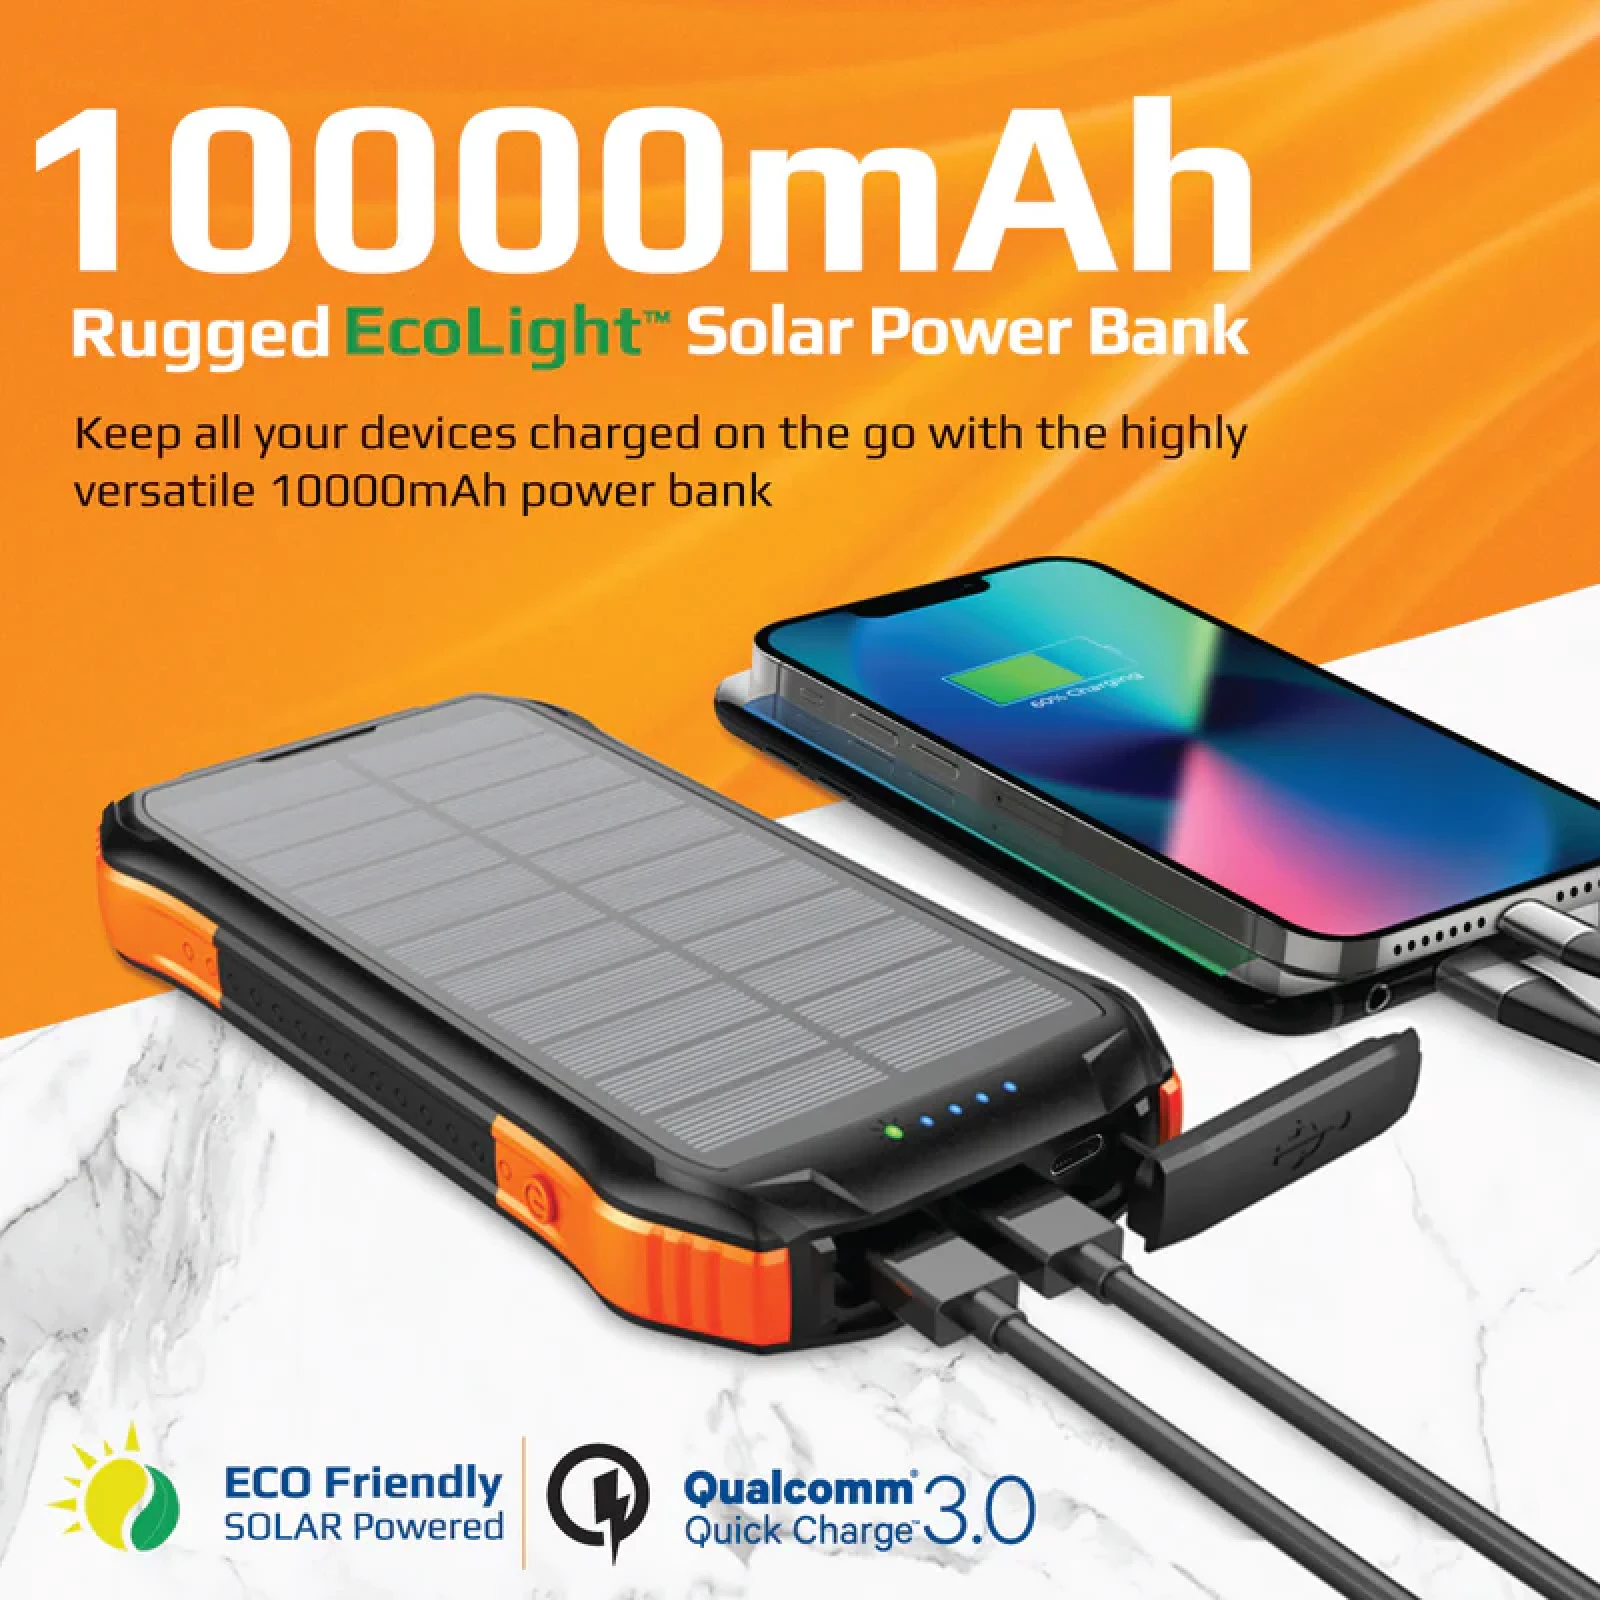 Външна батерия ProMate, SolarTank-10PDQi ,PowerBank , Rugged, EcoLight 20W / 3.0 QC 5 in 1 10000mAh - Черна